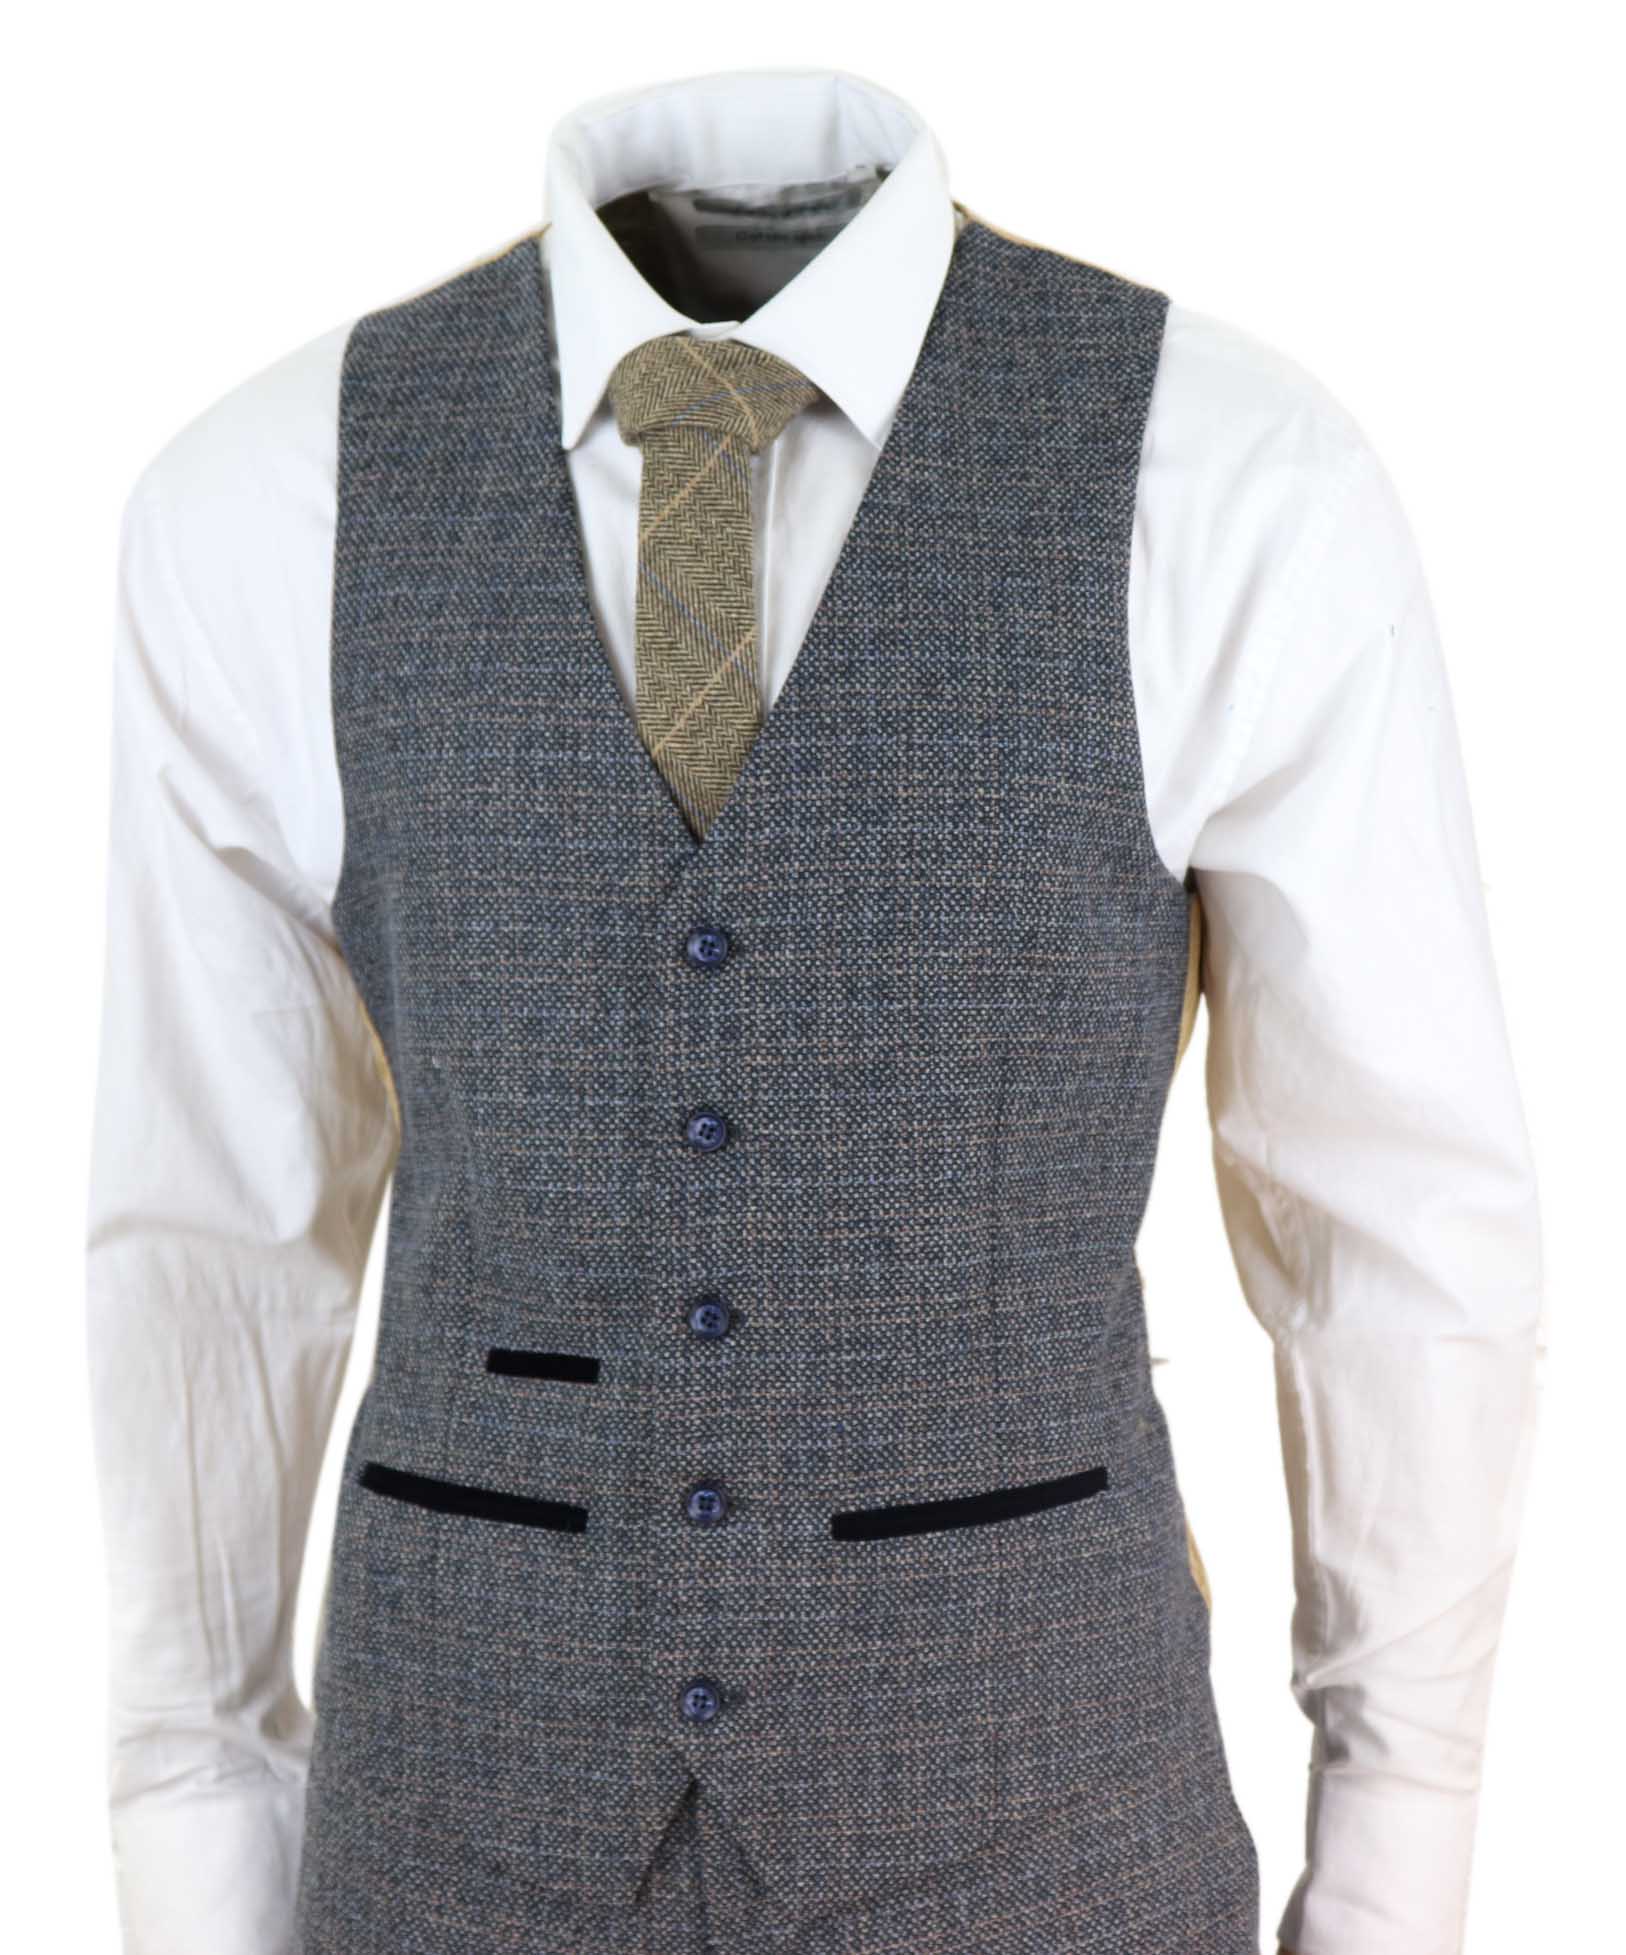 Mens 3 Piece Tweed Check Suit - Navy Blue: Buy Online - Happy Gentleman